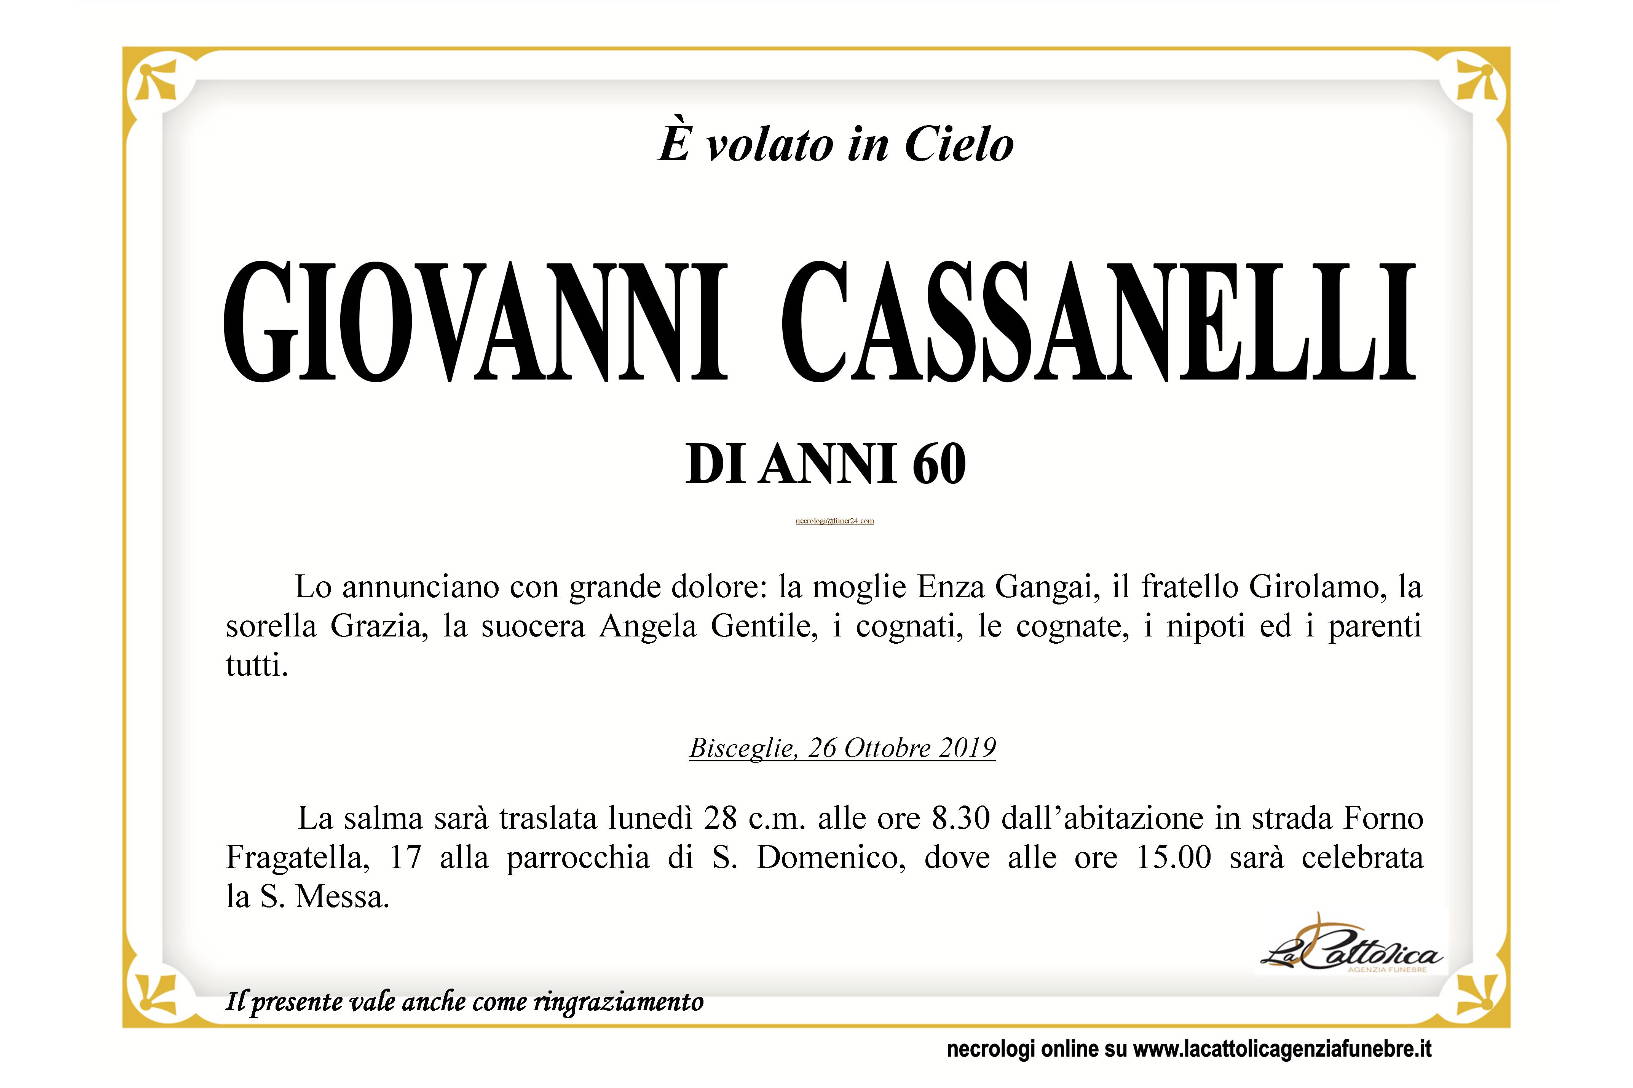 Giovanni Cassanelli